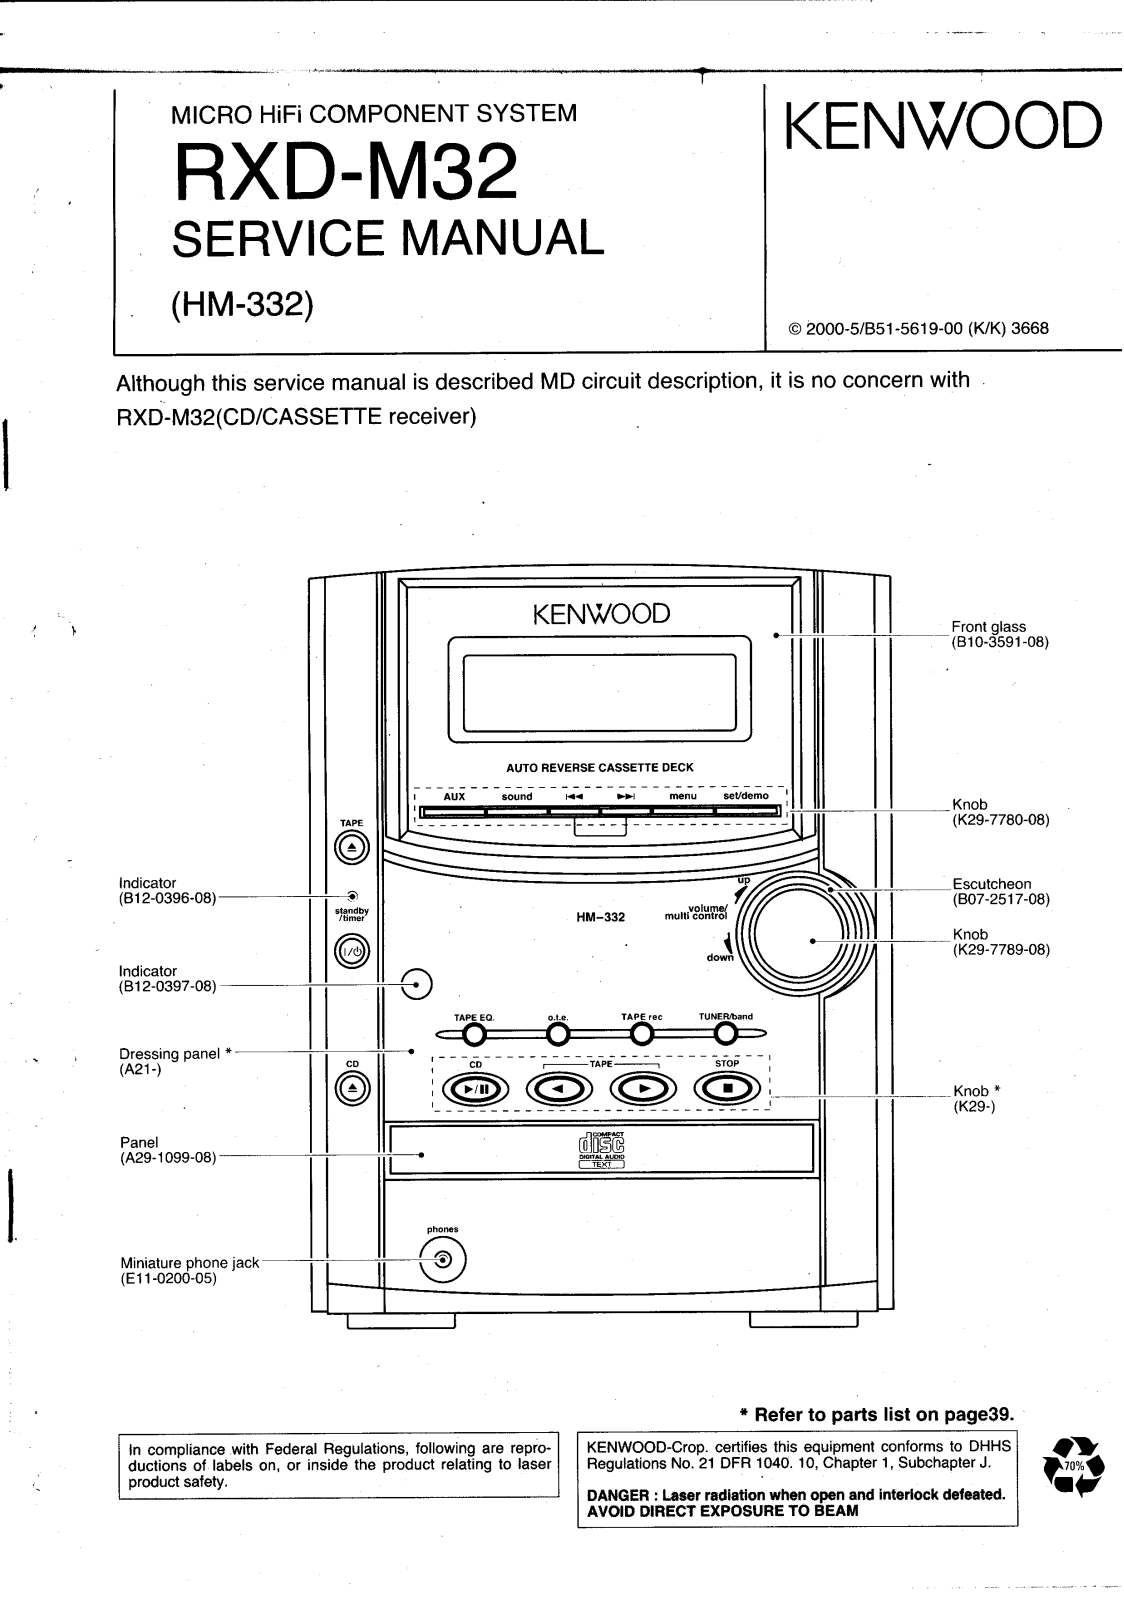 Kenwood RXD M32 Service Manual